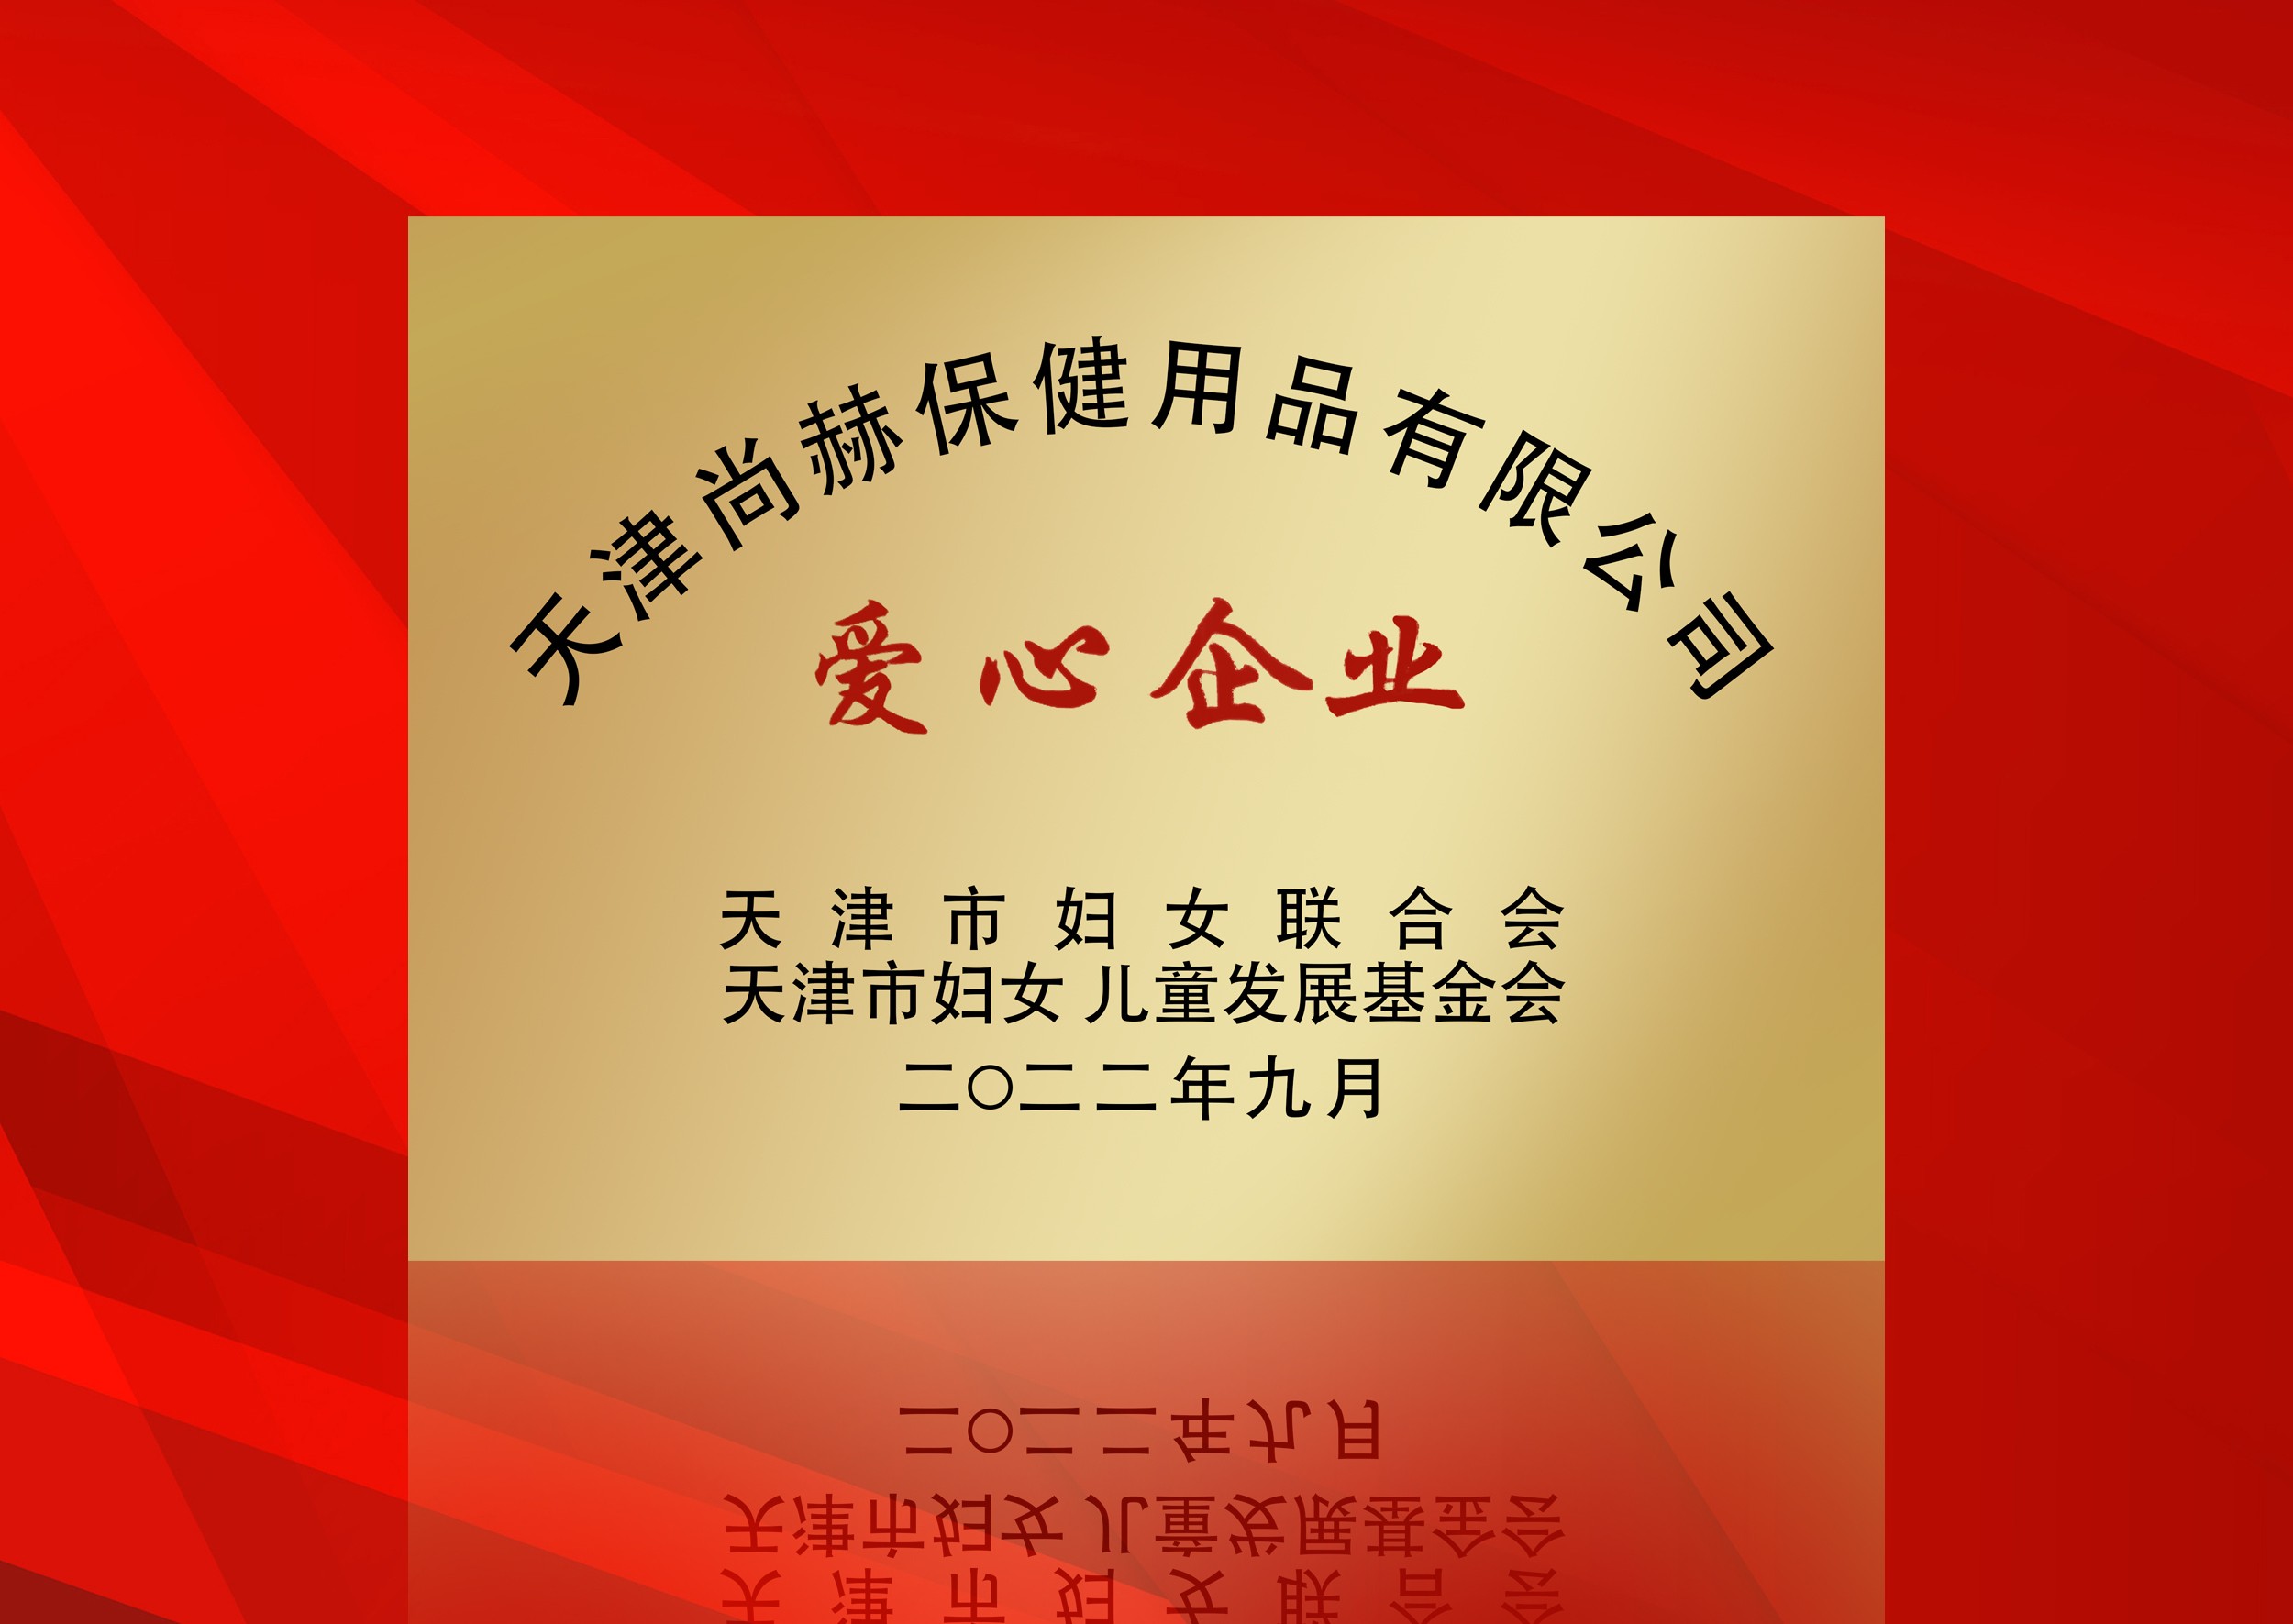 2022年9月-完美体育官方网站-完美体育(中国)有限公司荣获-天津市妇女联合会-“爱心企业”称号